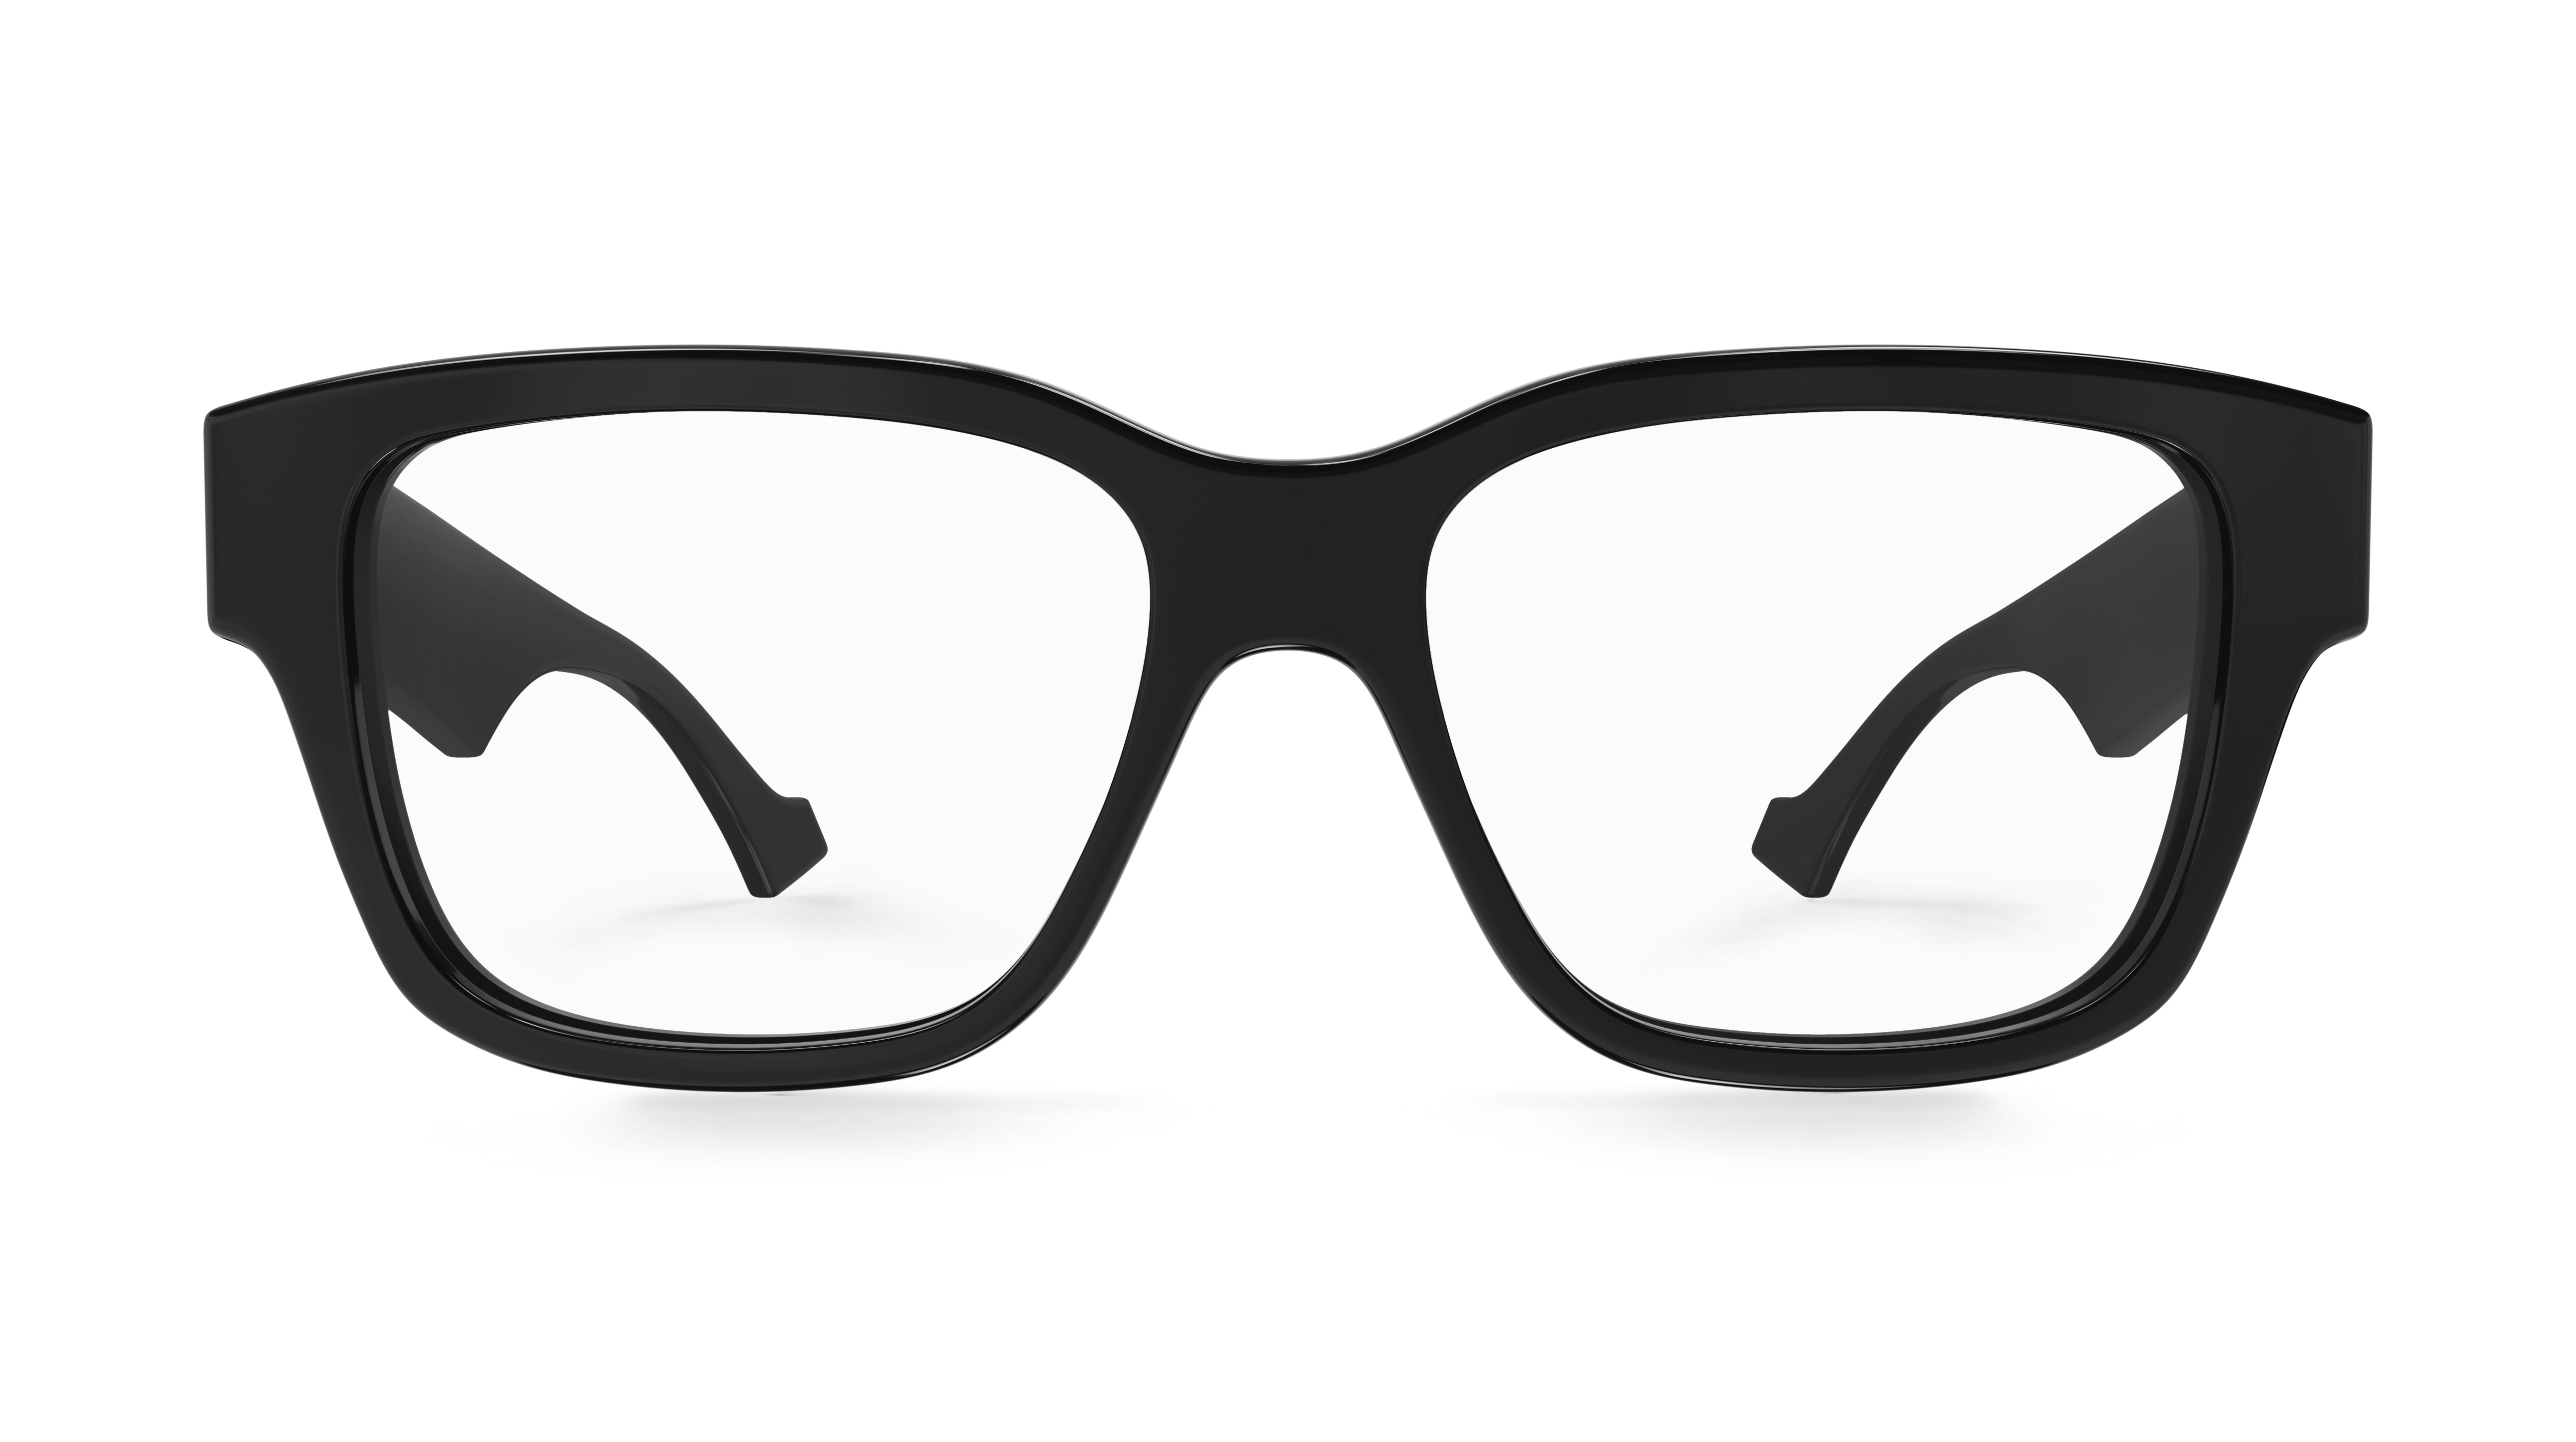 Gucci logo-charm square-frame Glasses - White